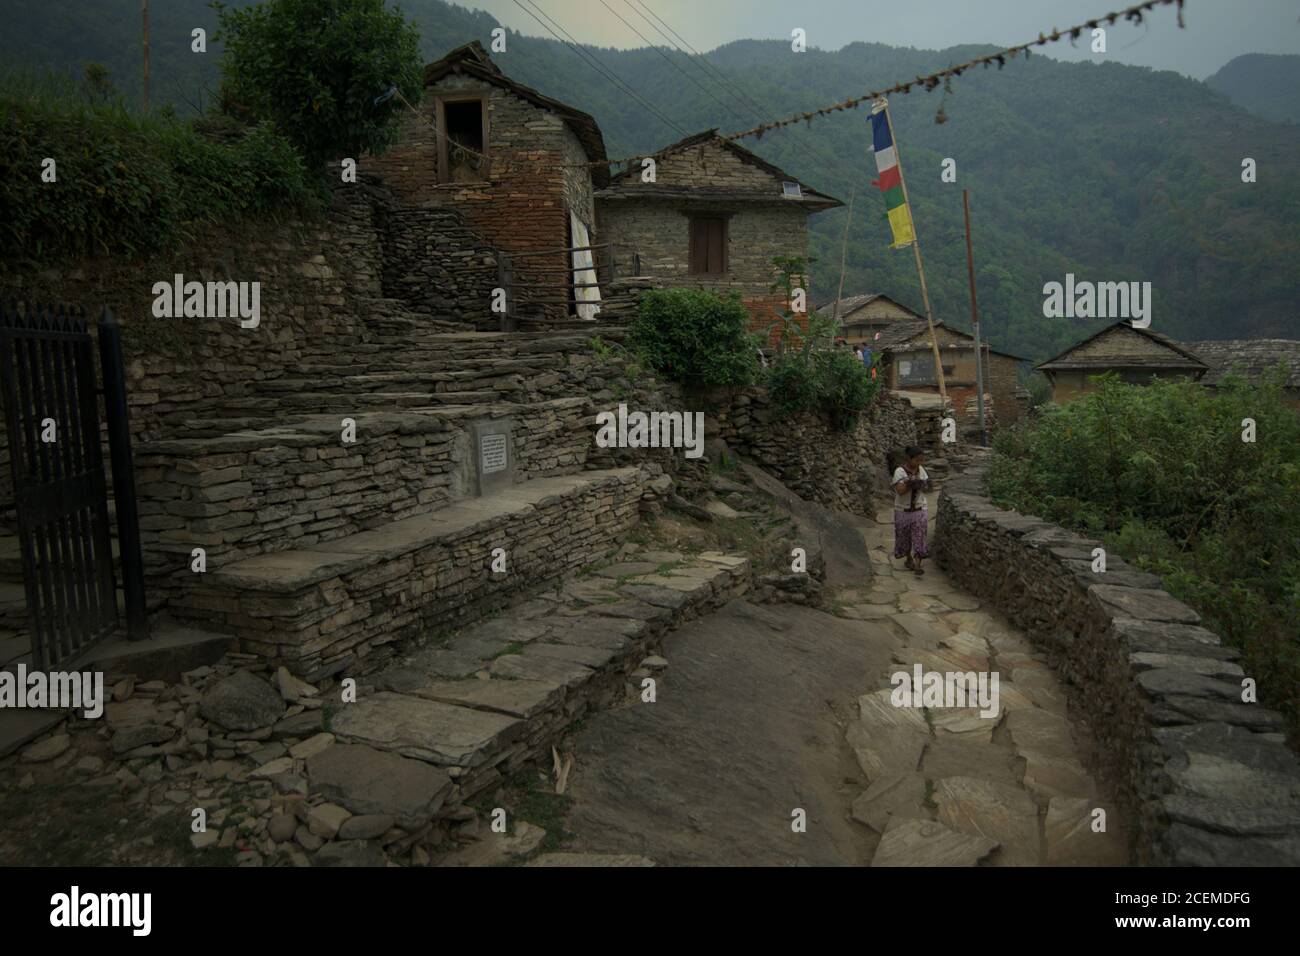 Ein Dorfbewohner, der auf dem Weg durch ein landwirtschaftliches Dorf geht, wo die Gemeinschaft auch Ökotourismus betreibt. Sidhane, Gandaki Pradesh, Nepal. Stockfoto